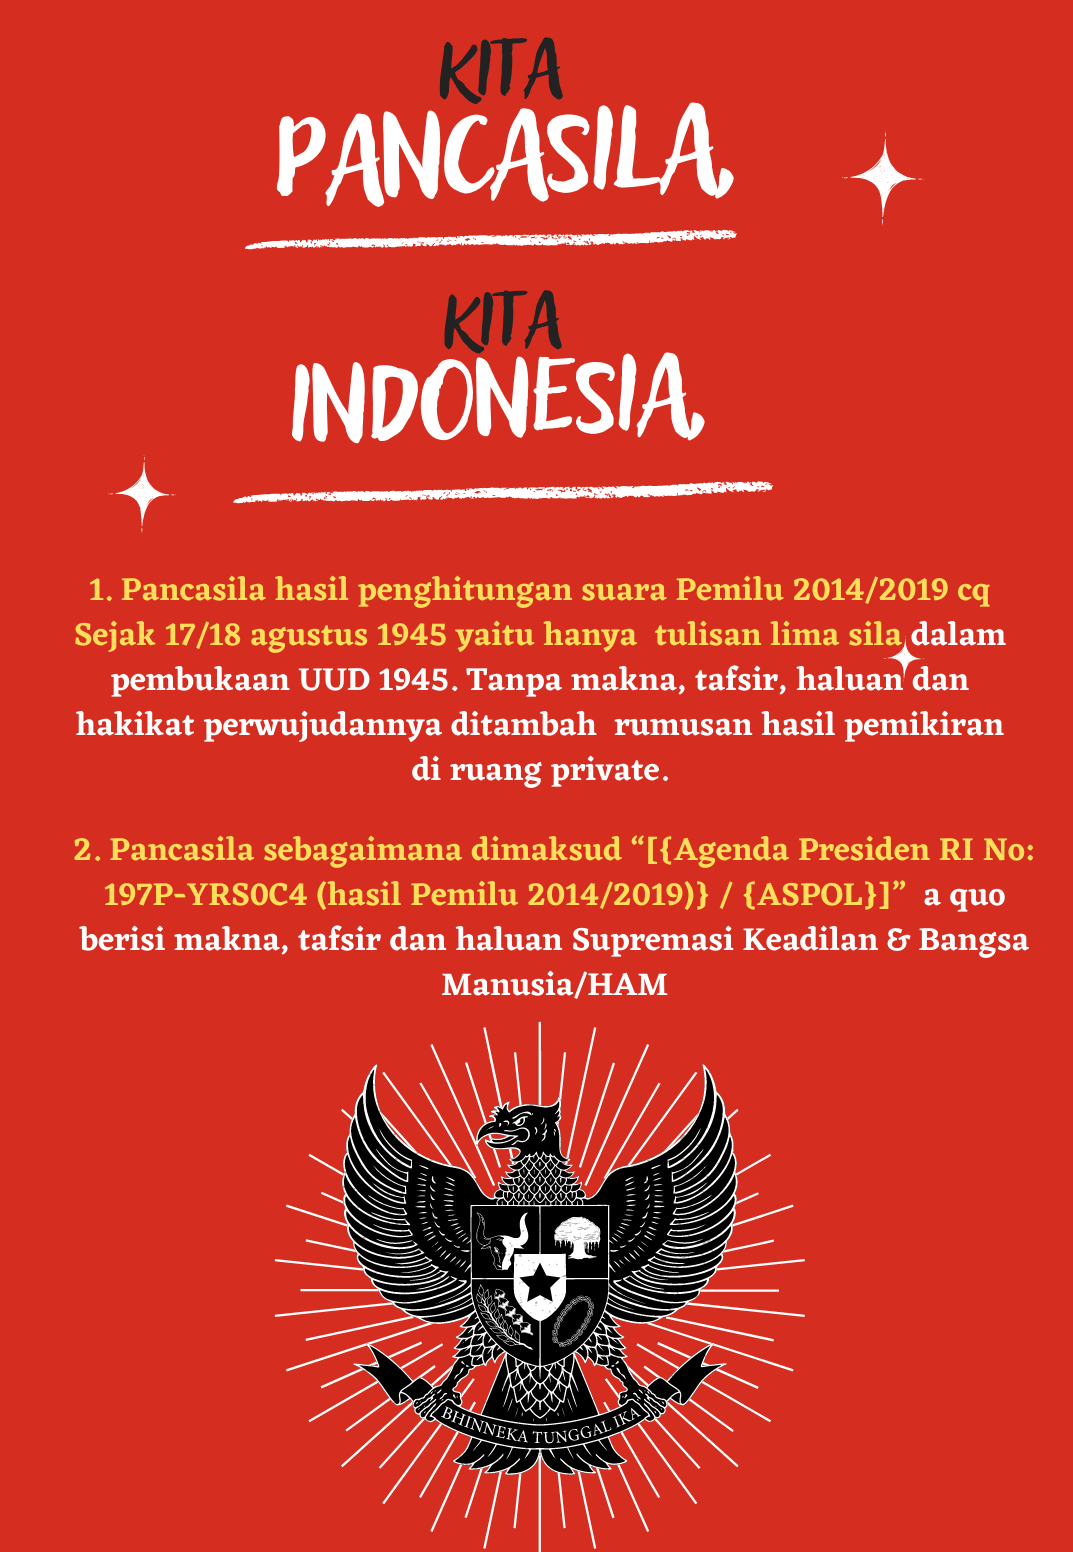 Keinginan bangsa indonesia bahwa demokrasi yang diterapkan di indonesia adalah demokrasi yang dilandasi nilai-nilai ketuhanan, kemanusiaan, persatuan, musyawarah dan keadilan adalah cita-cita